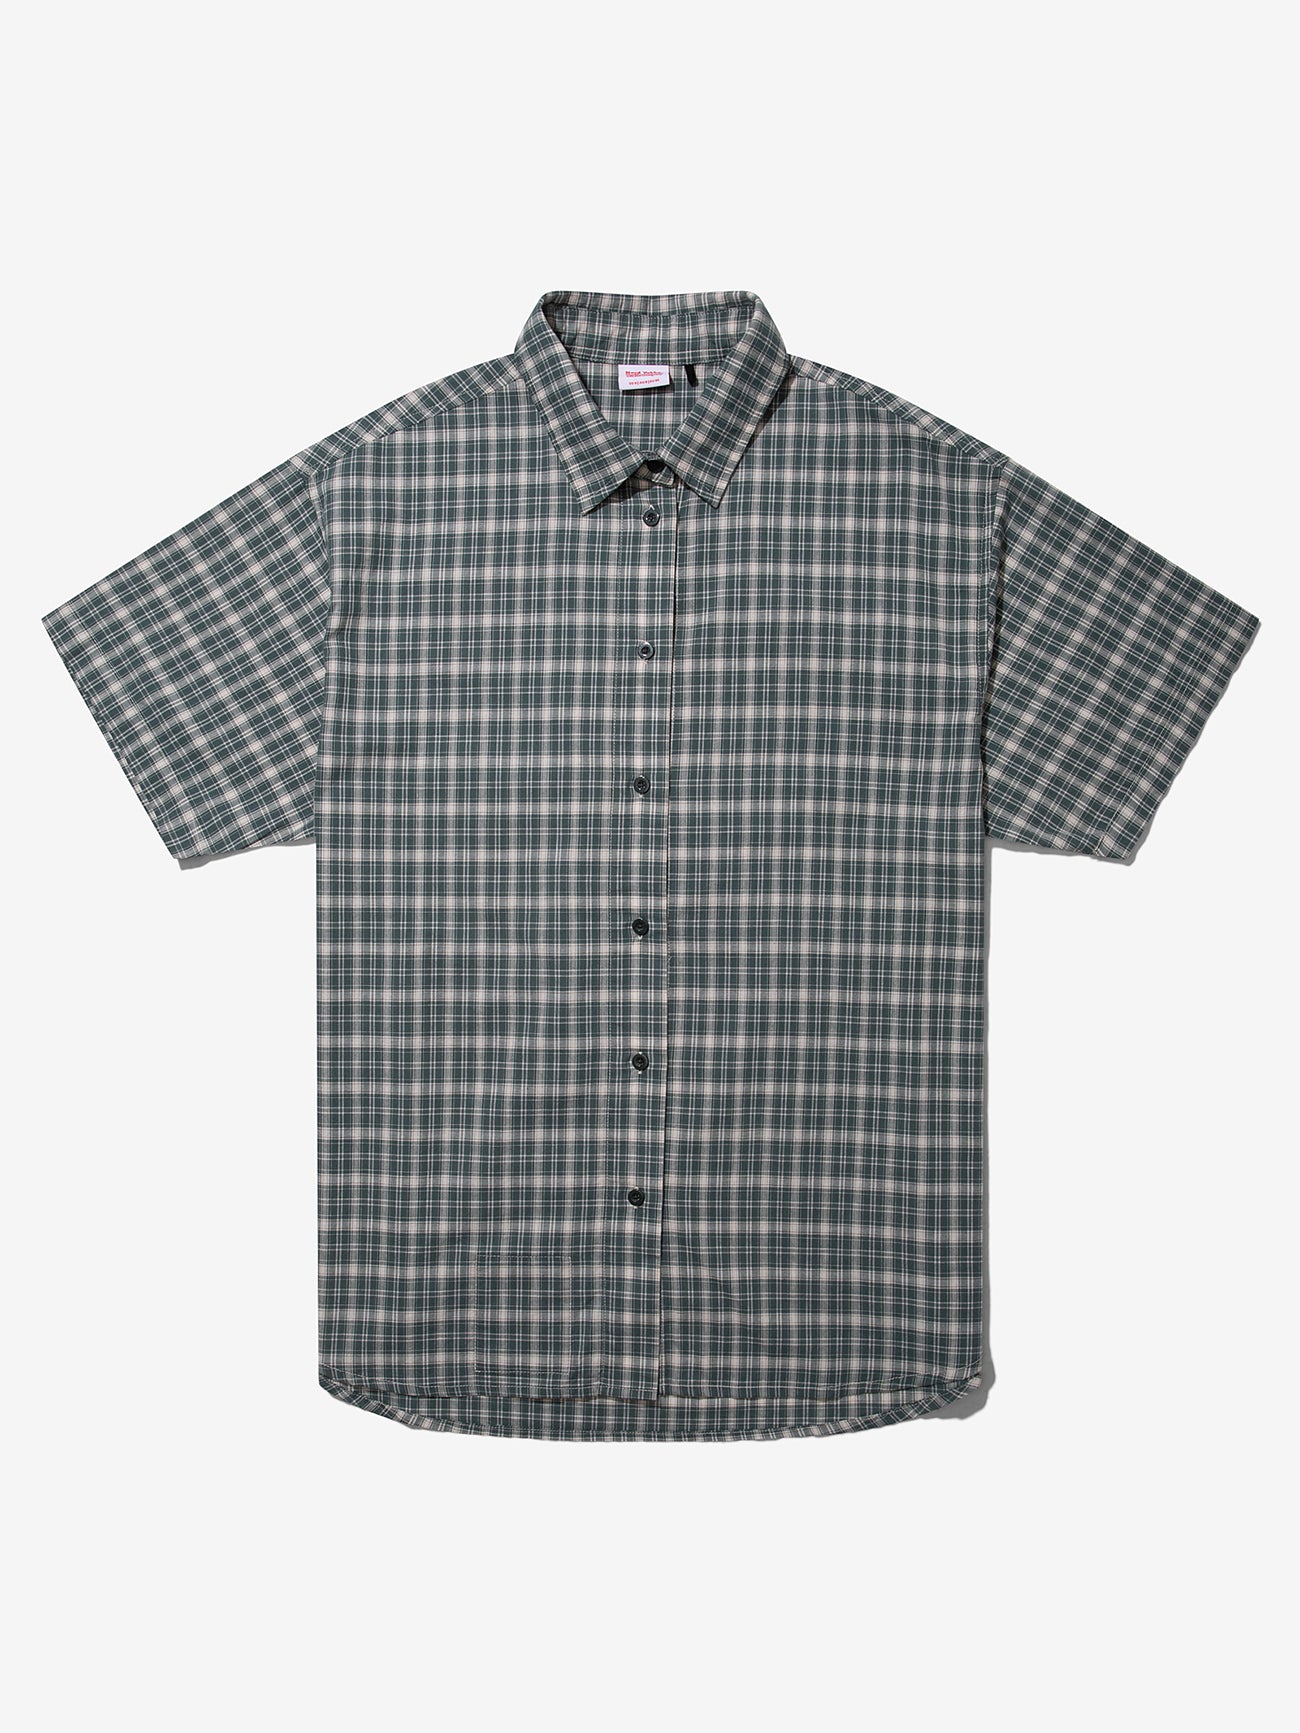 Hard Yakka Create - Short Sleeve Check Shirt - Scrubs Green